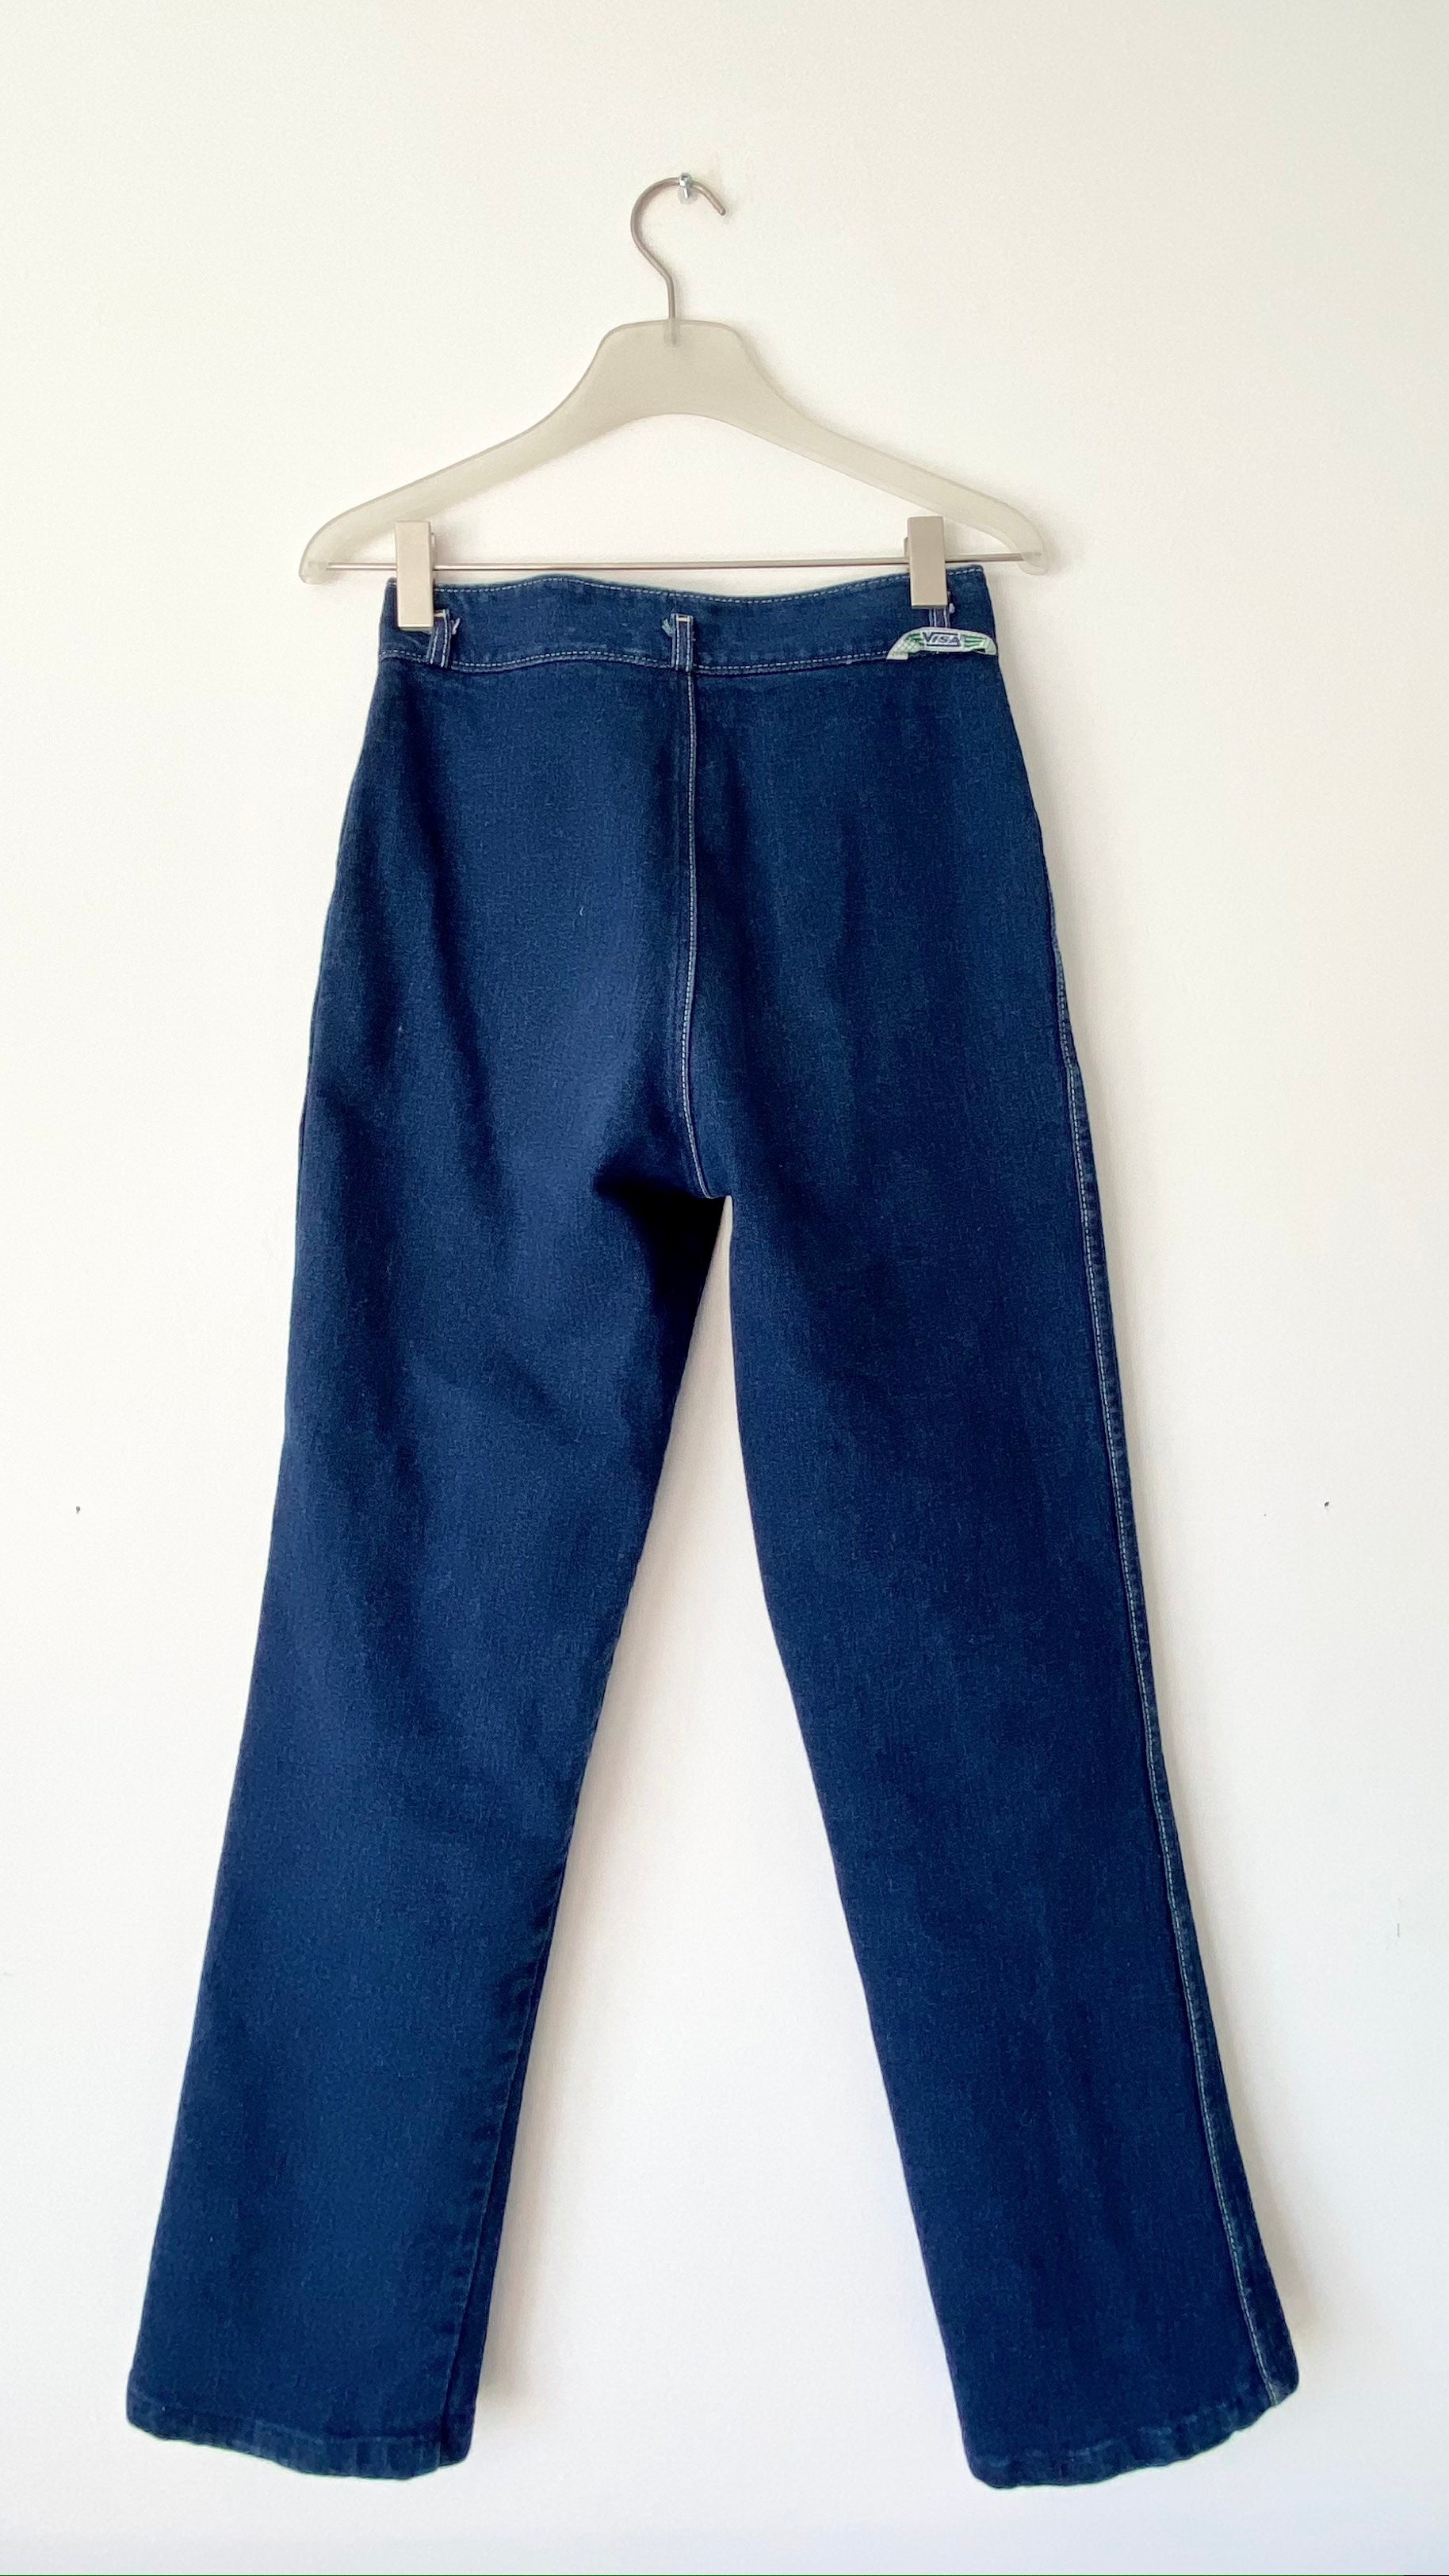 Vintage Dark Wash Stretch Jeans size 28